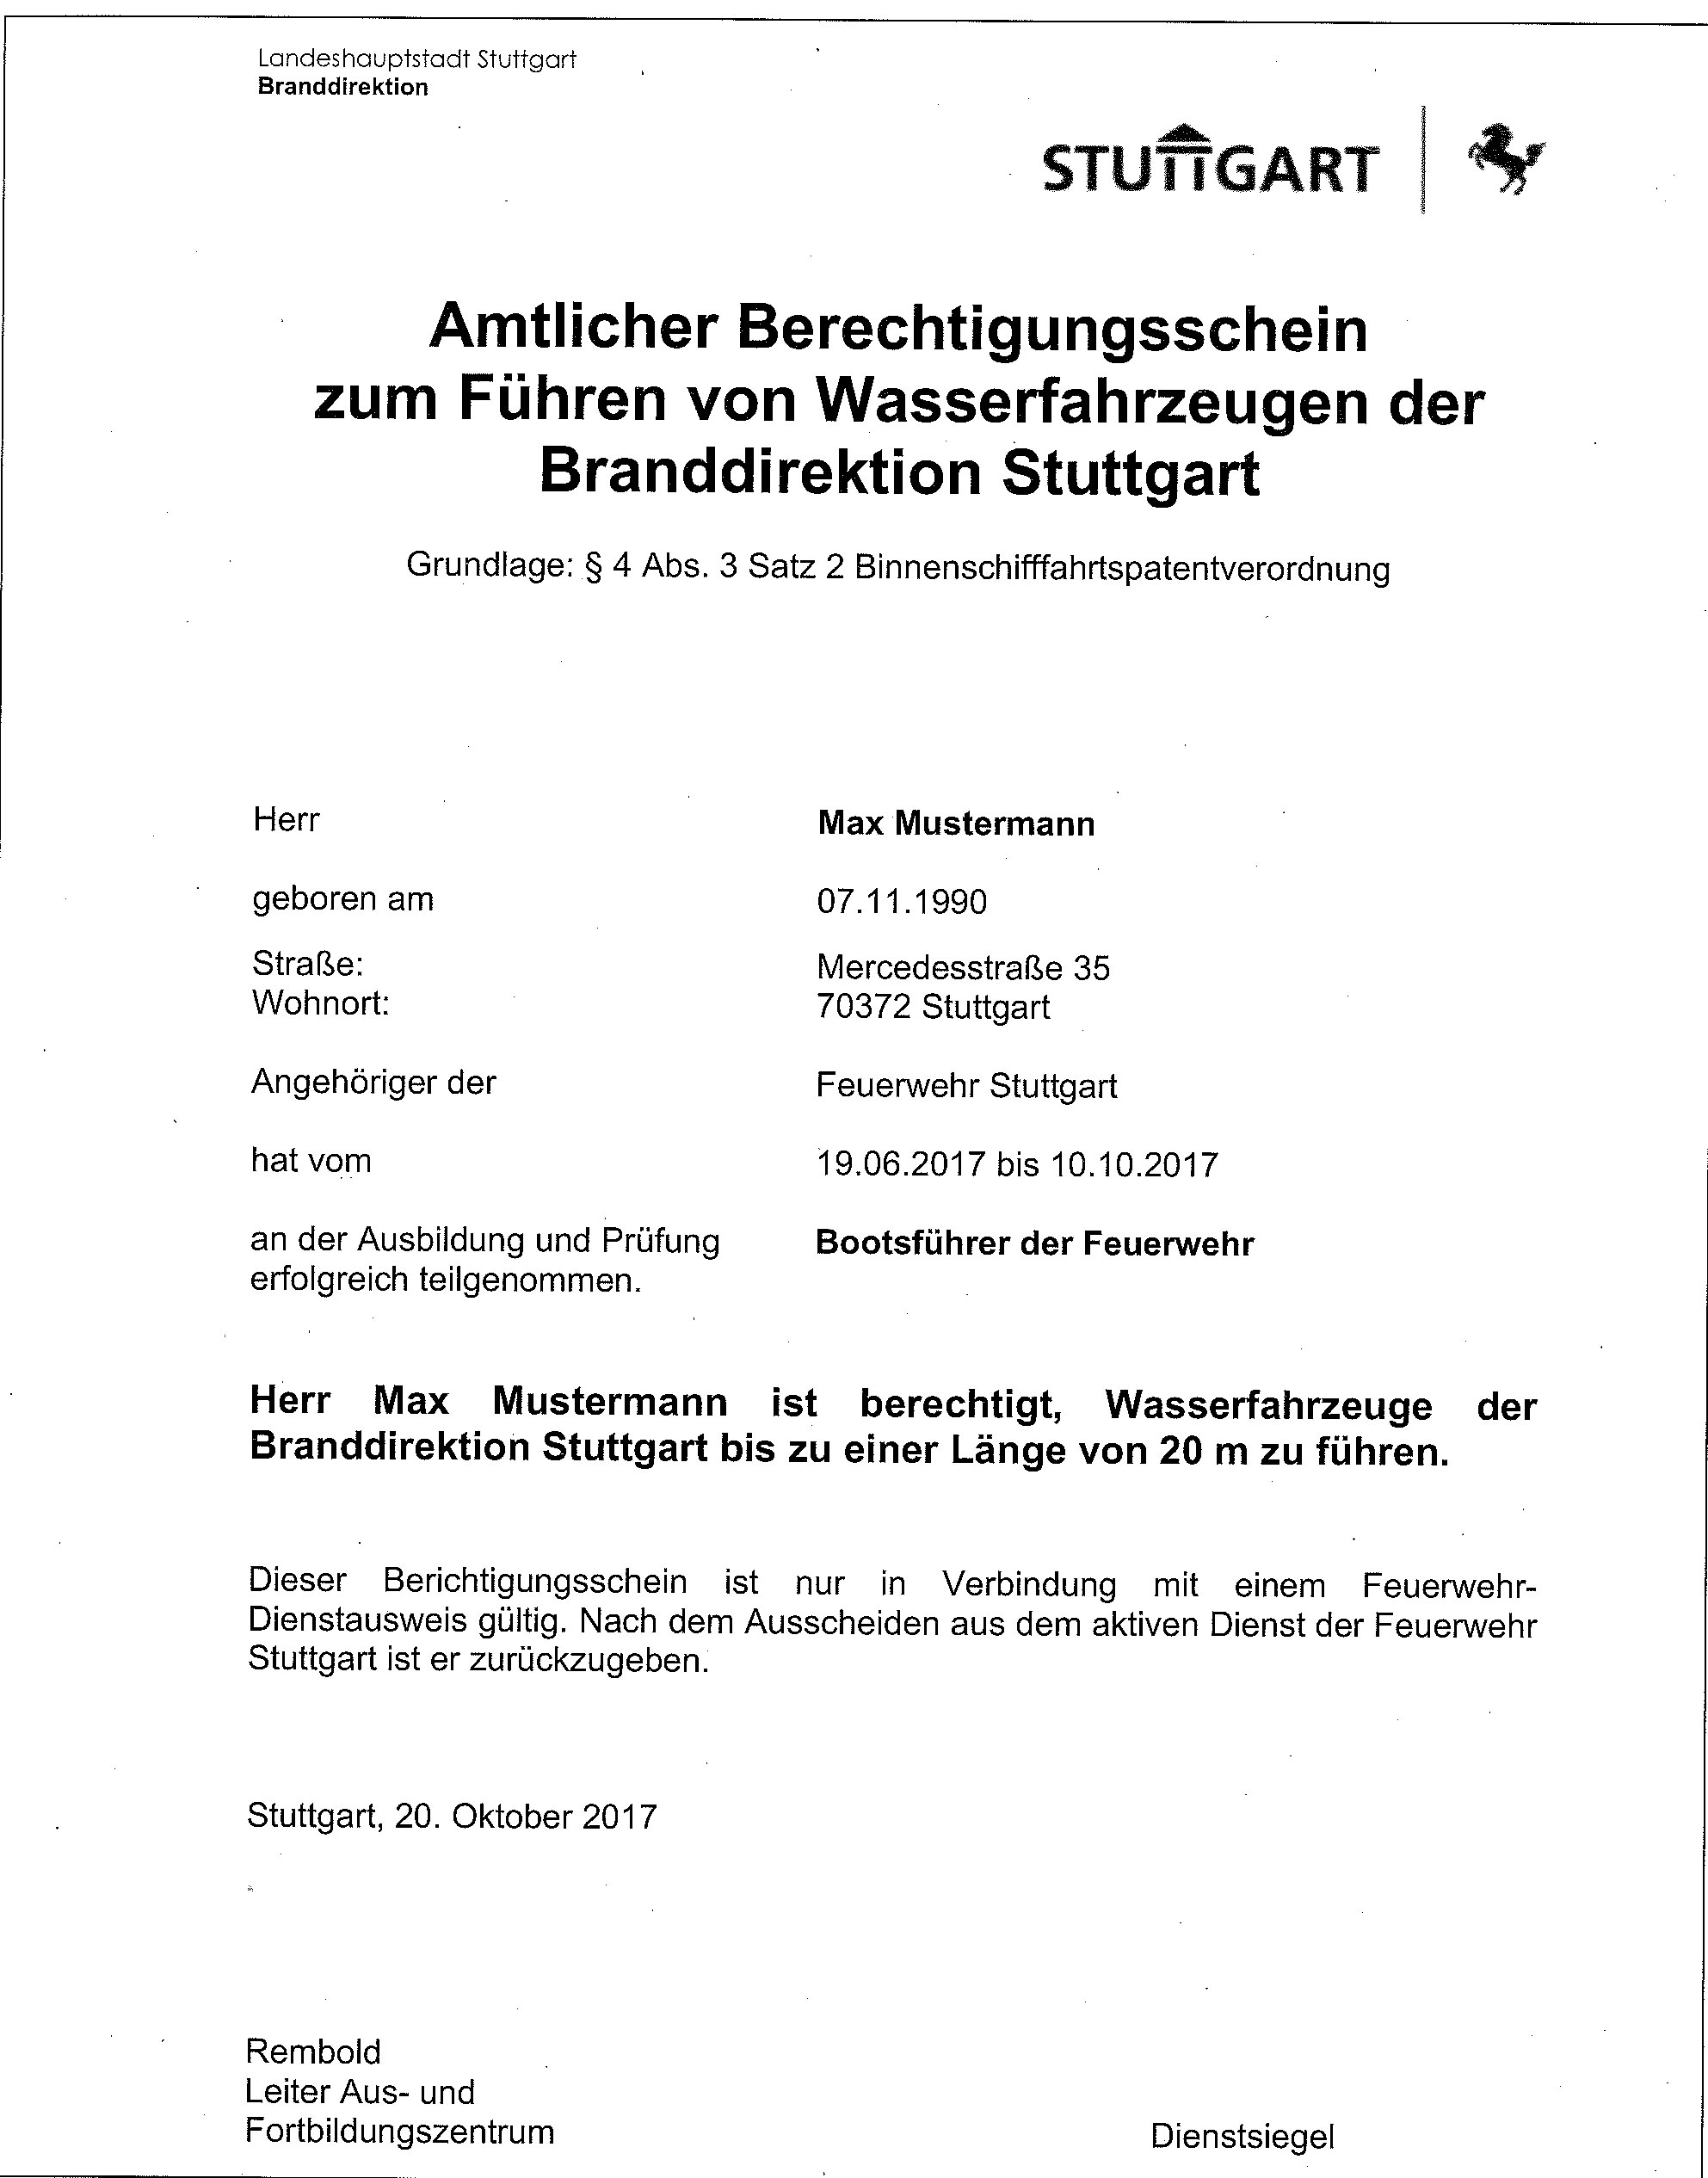 Muster Amtlicher Berechtigungsschein zum Führen von Wasserfahrzeugen der Branddirektion Stuttgart